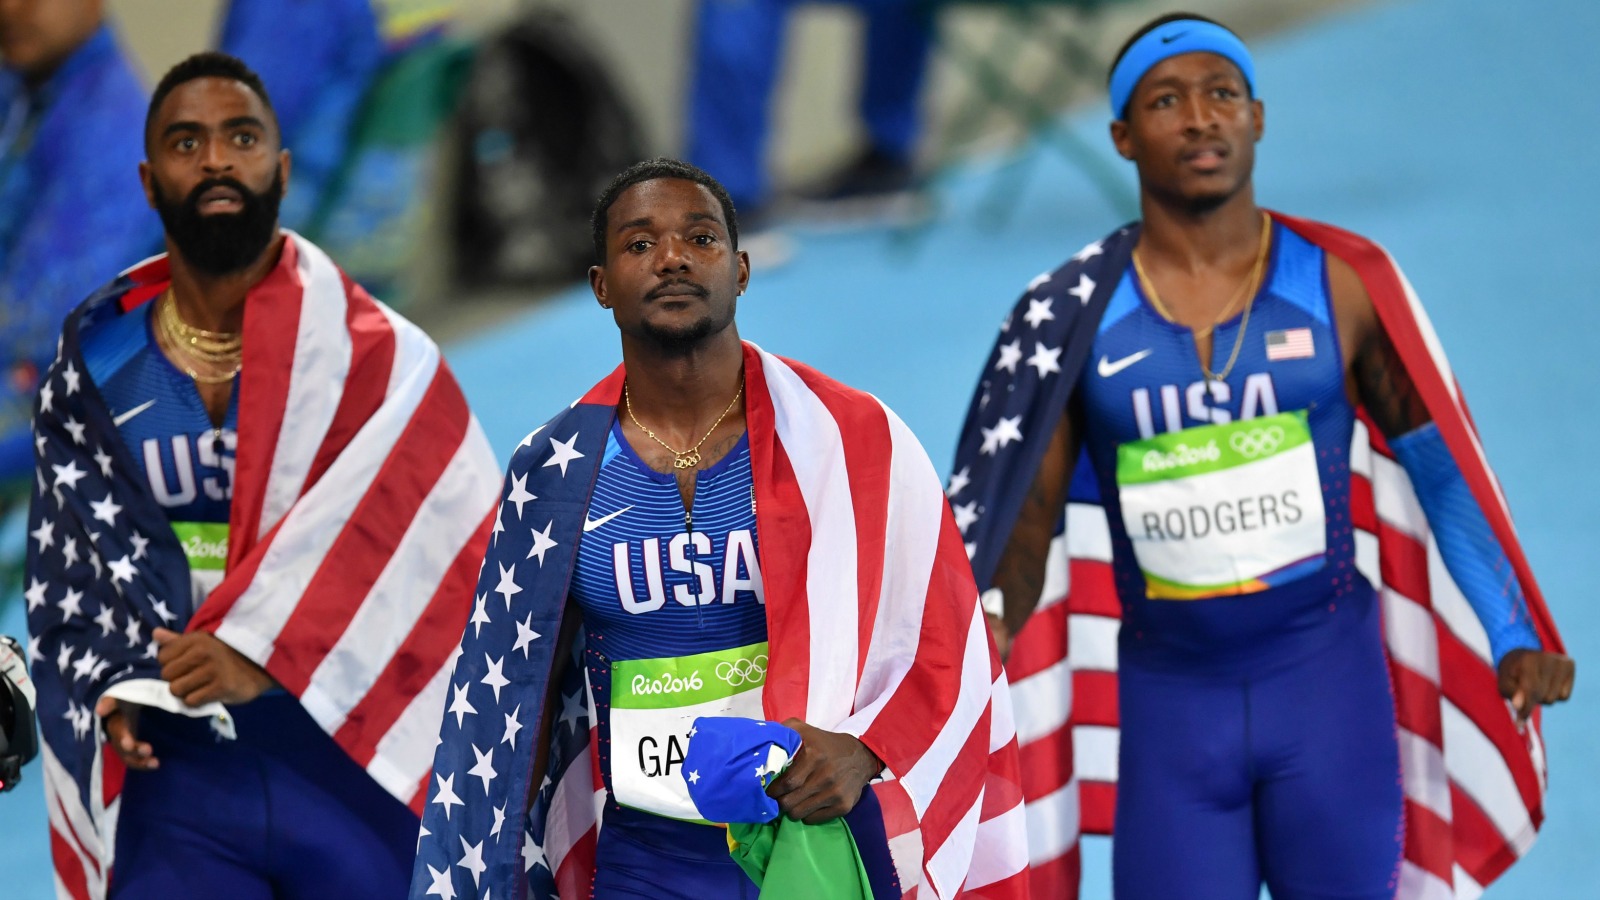 リオ五輪 陸上男子400mリレー初の 銀 と3位となったアメリカが失格